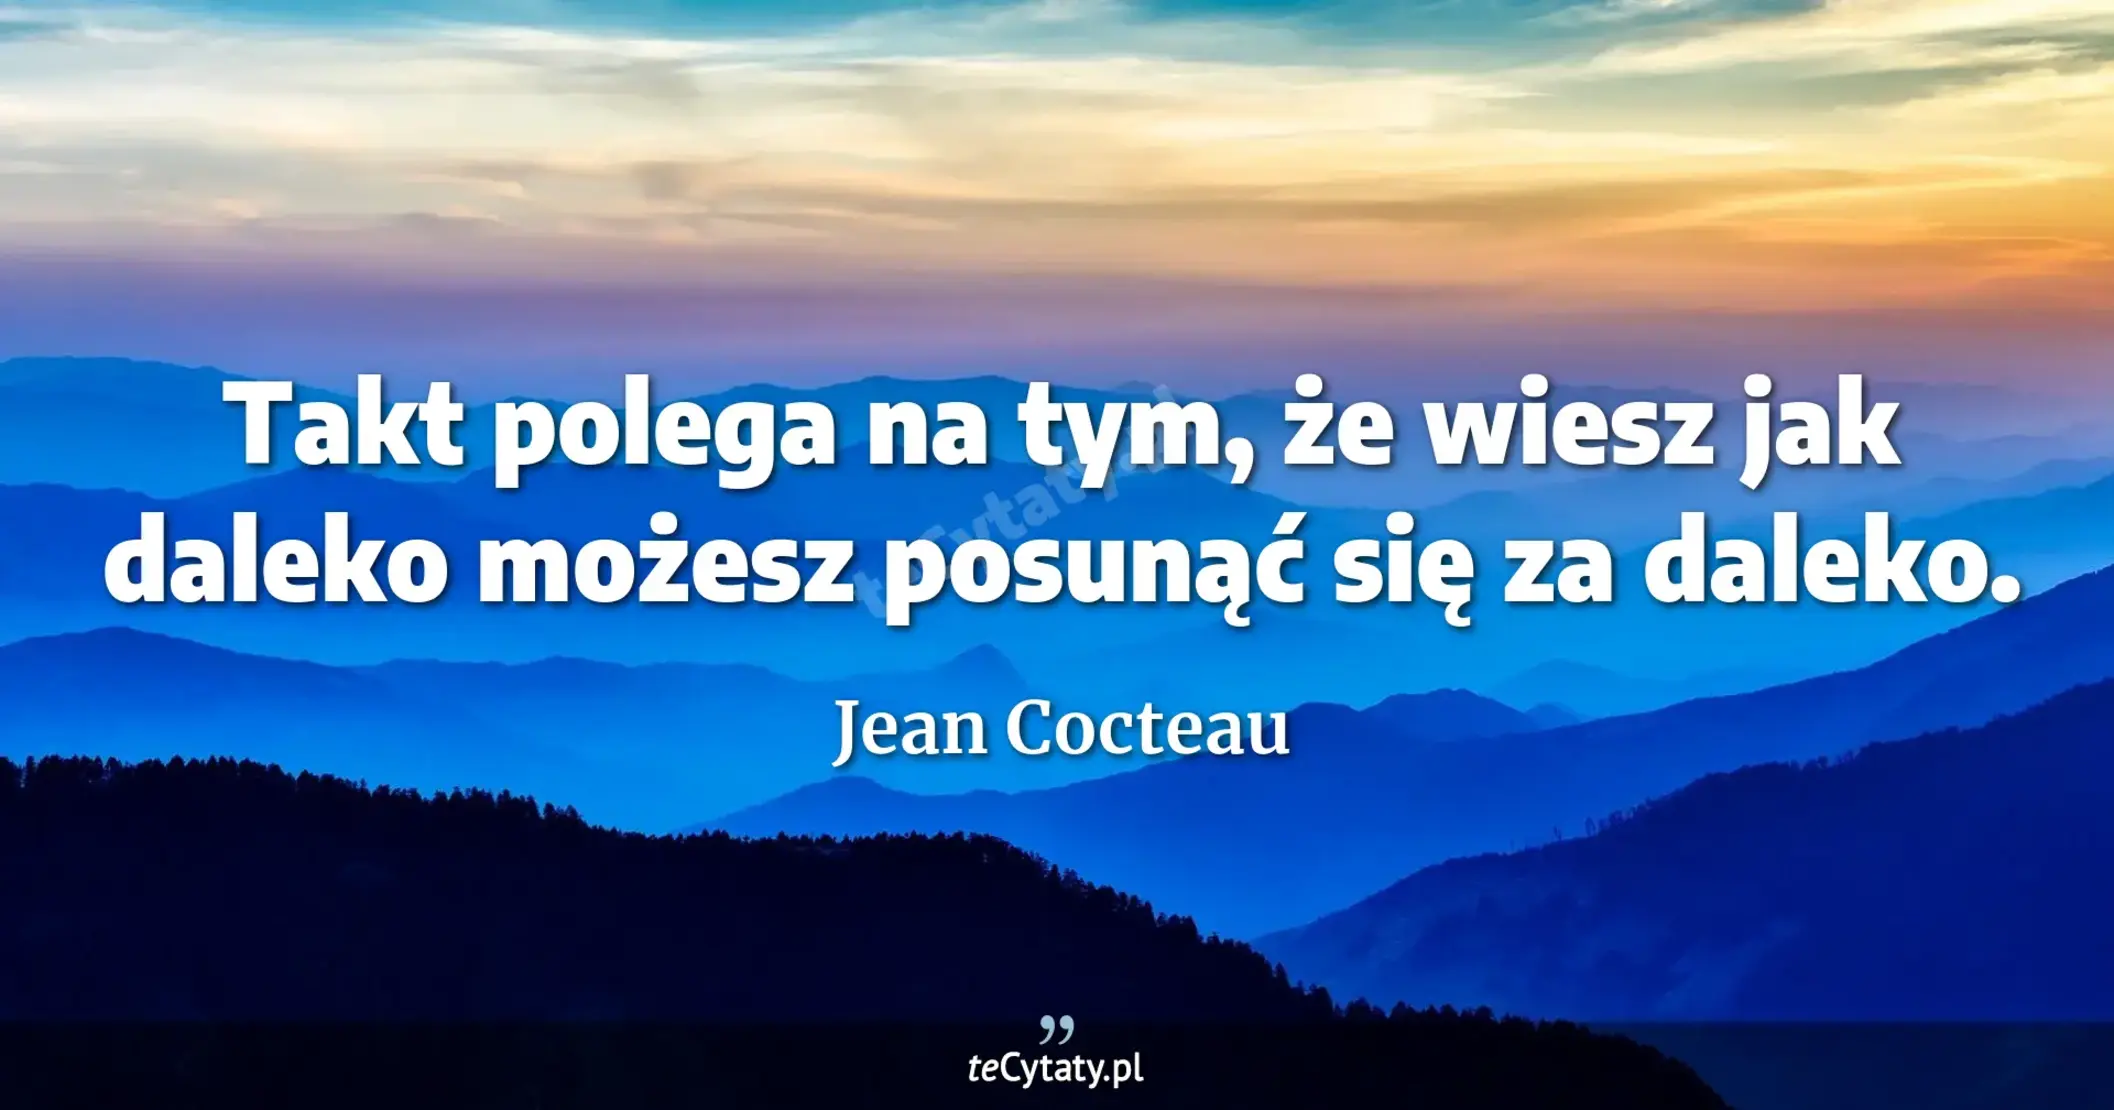 Takt polega na tym, że wiesz jak daleko możesz posunąć się za daleko. - Jean Cocteau